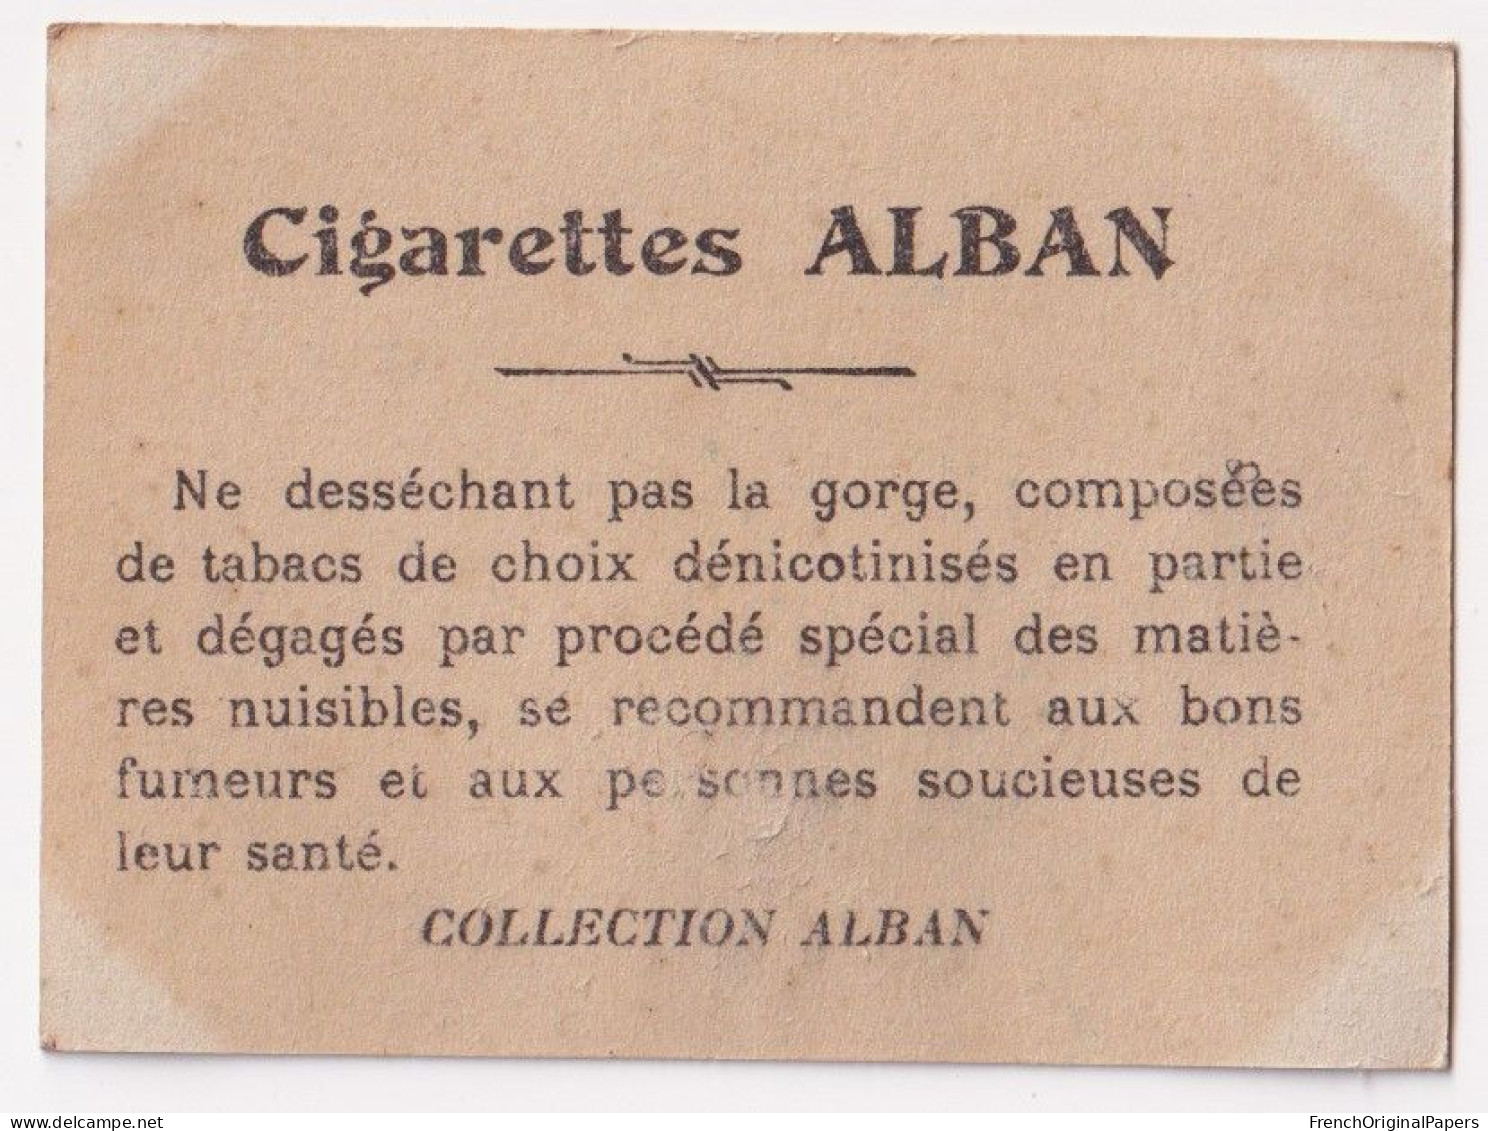 Cavaliéri - Cigarettes L. Alban 1910 Photo Femme Sexy Pin-up Vintage Artiste Cabaret Paris Bône Danse Danseuse A62-19 - Other Brands